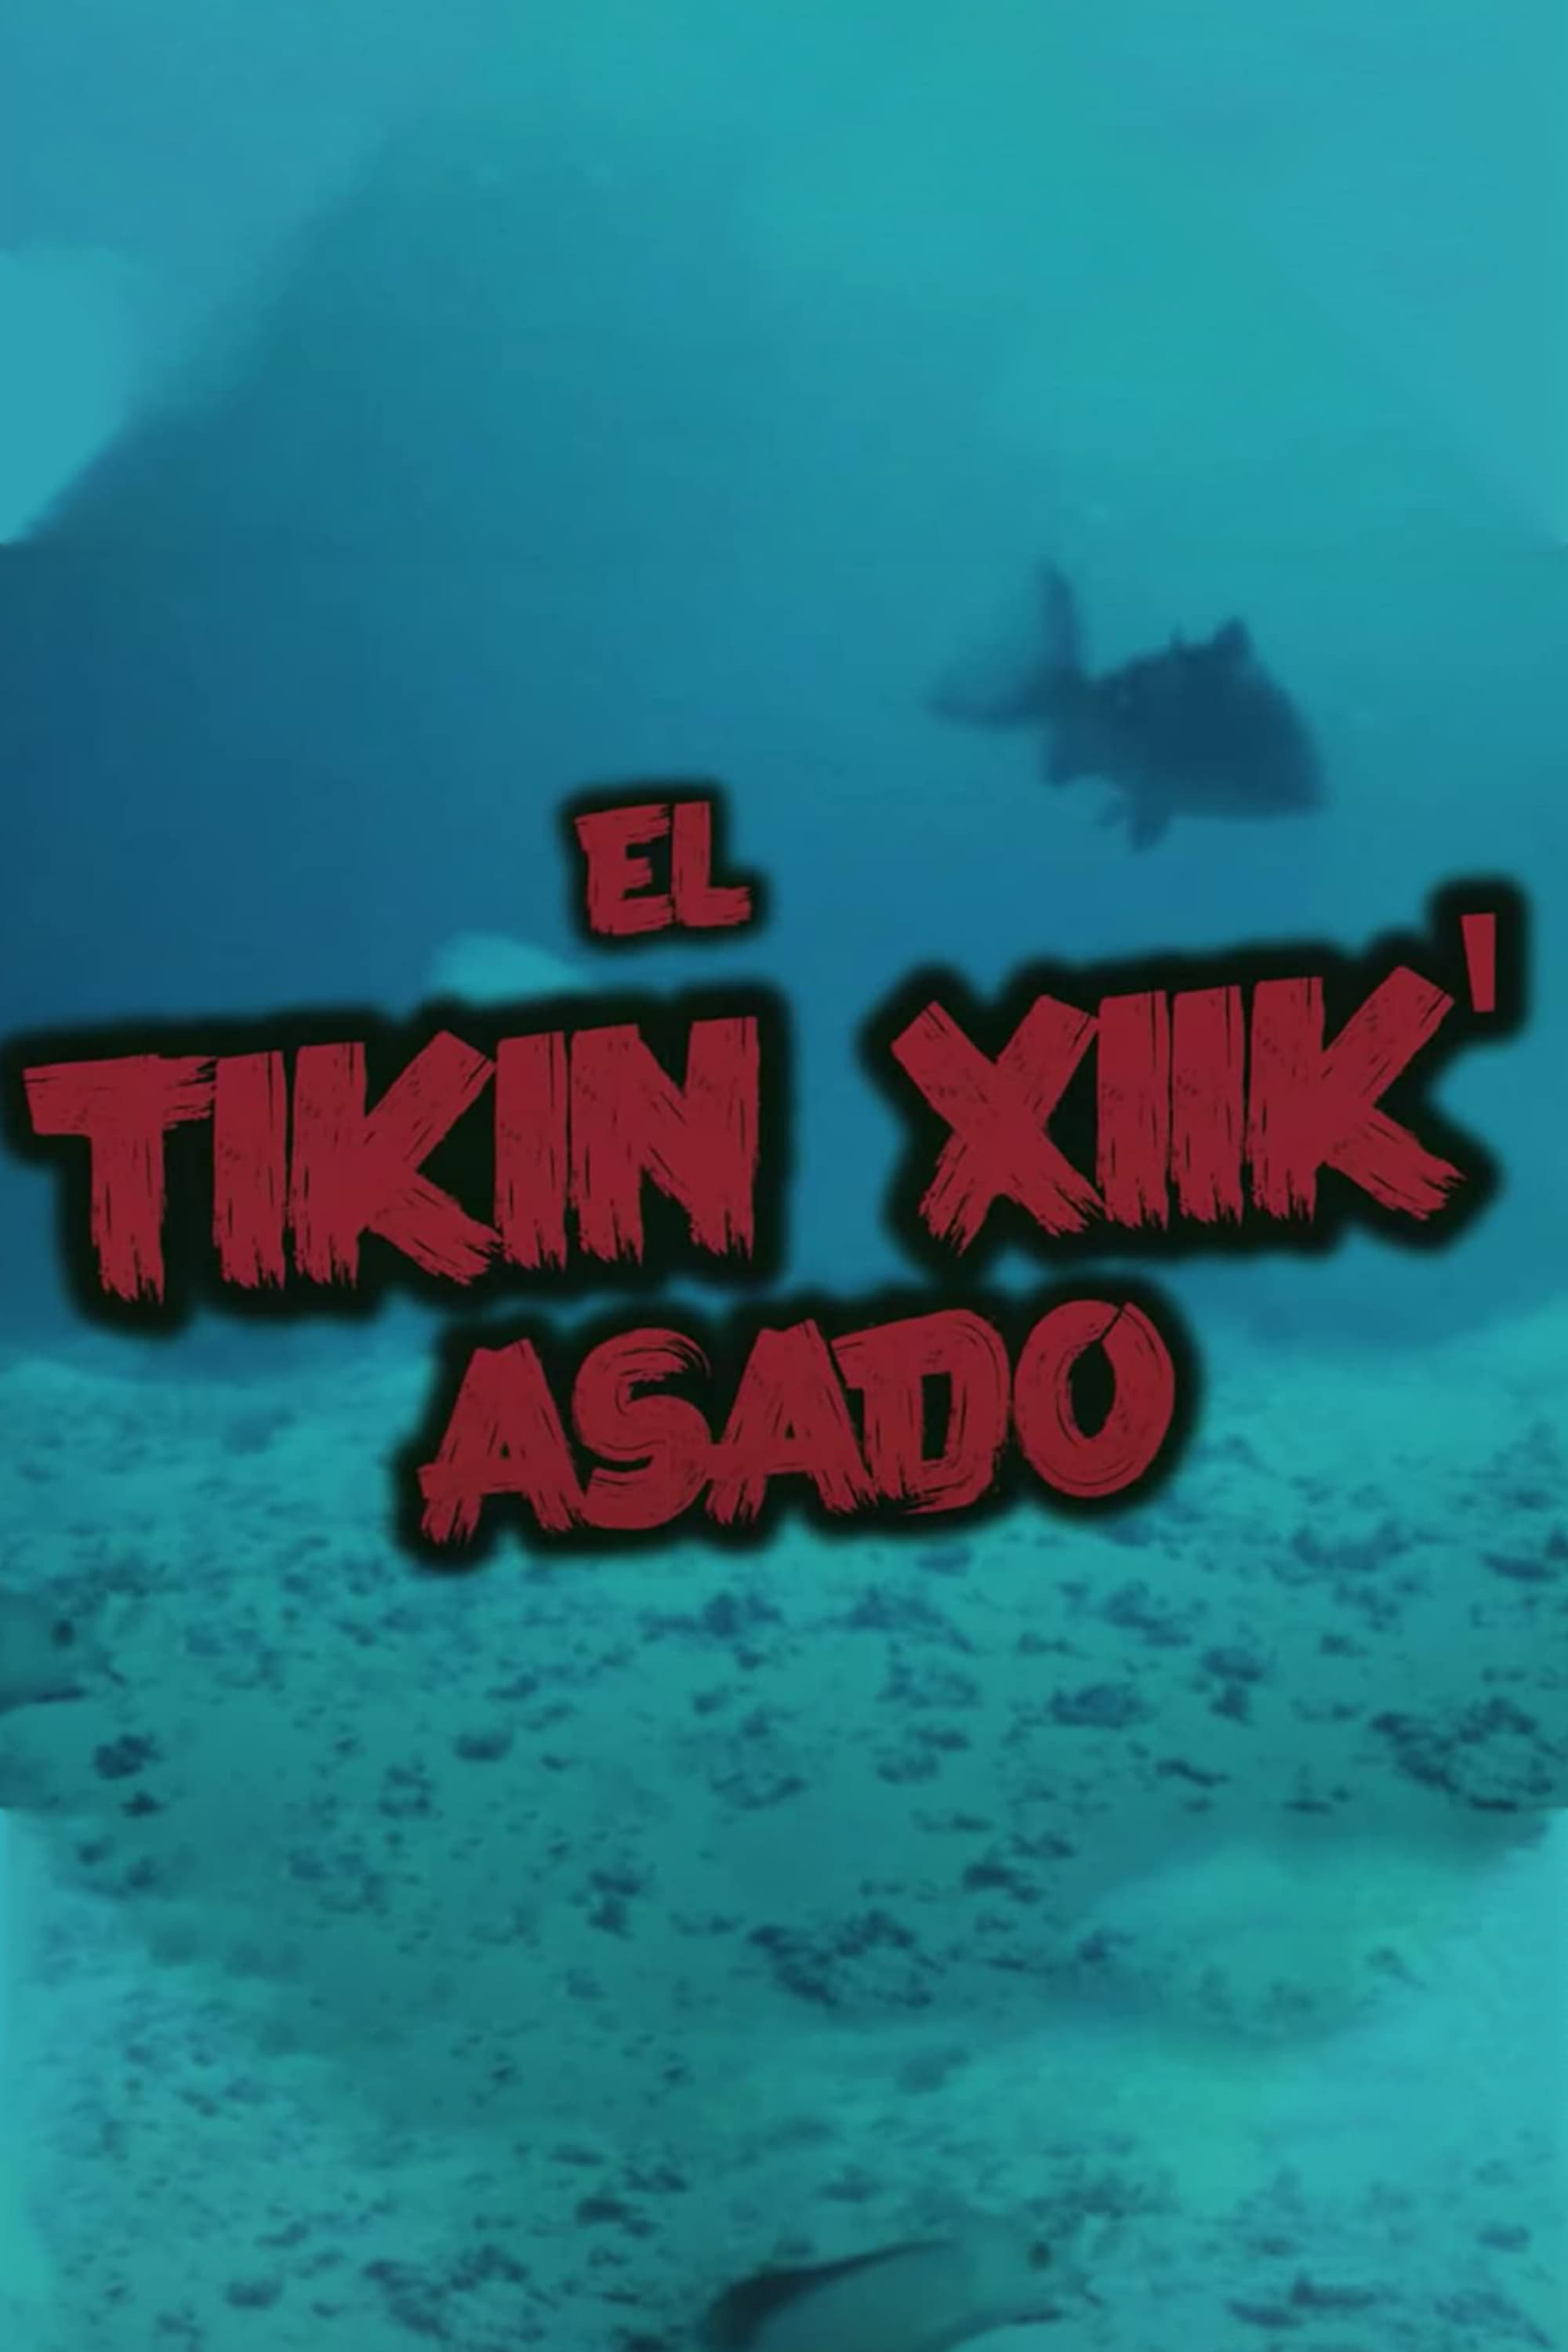 El Tikin Xiik' Asado